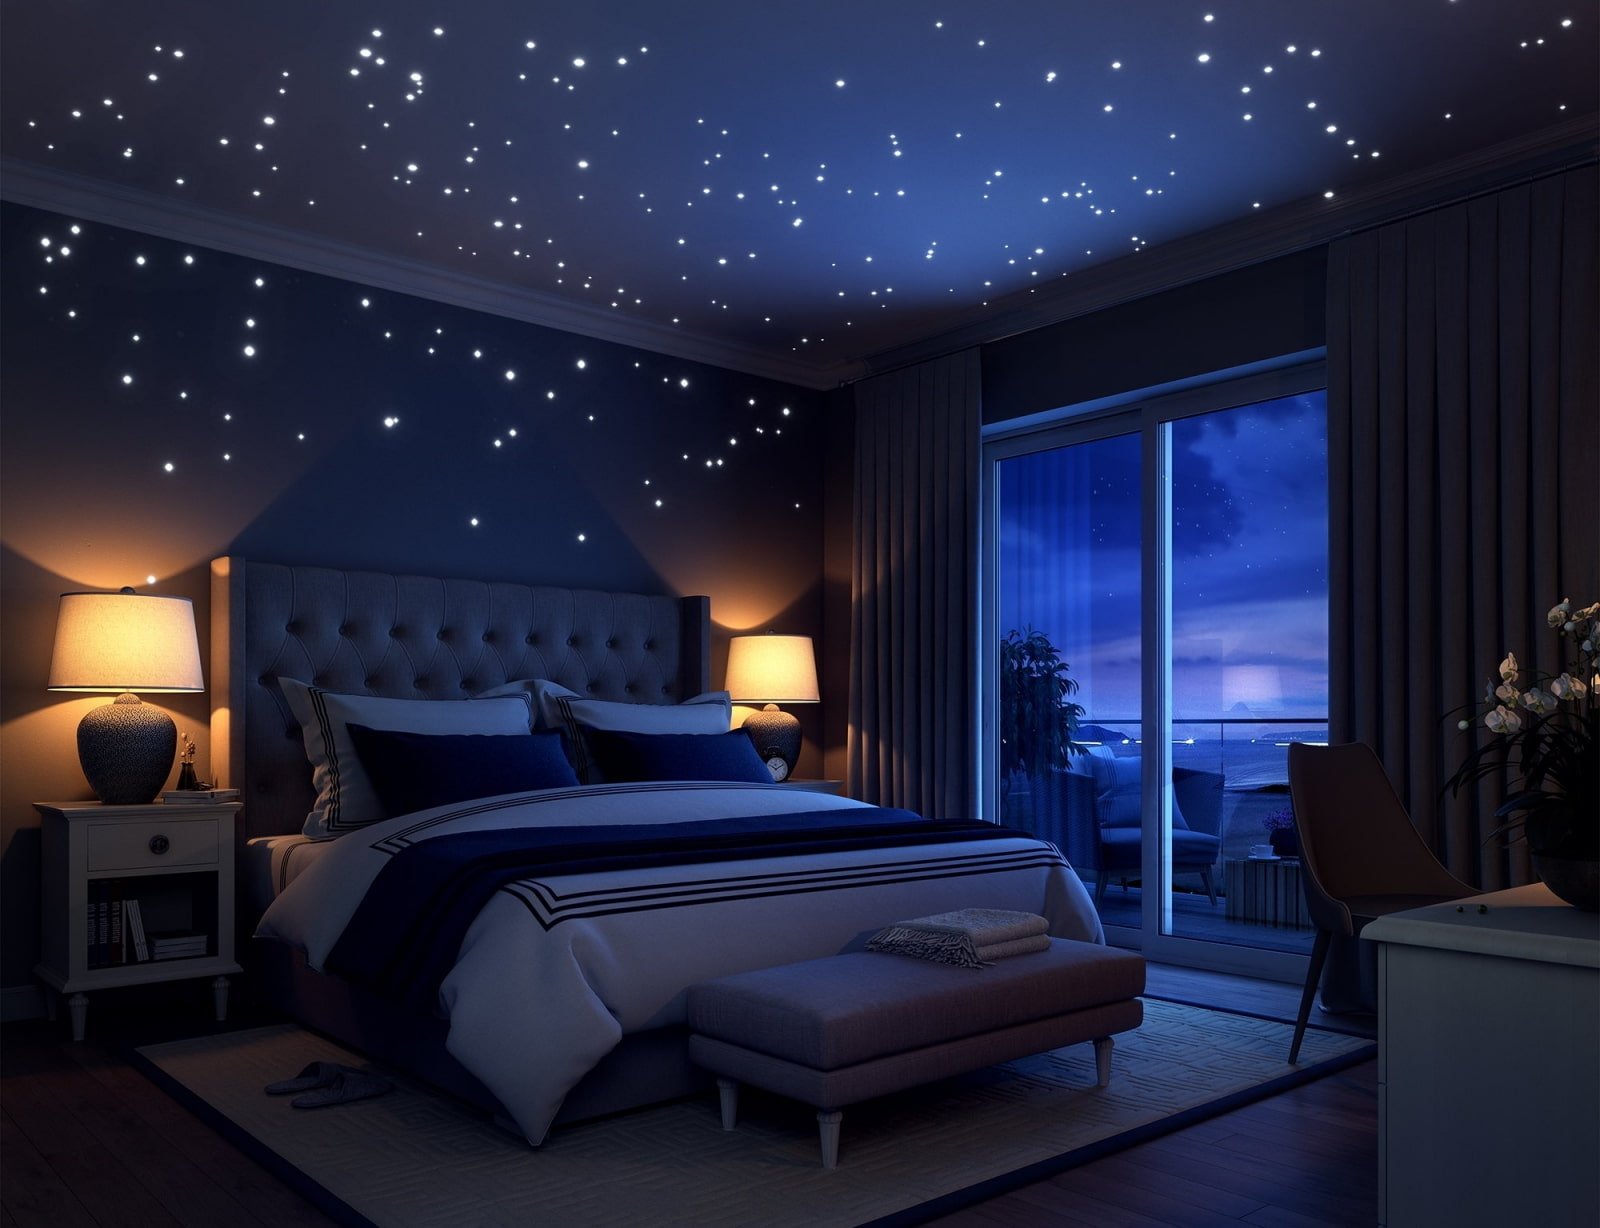 Звездное небо домой. Звездный потолок в спальне. Потолок звездное небо в спальне. Натяжной потолок звездное небо. Потолок со звездами.